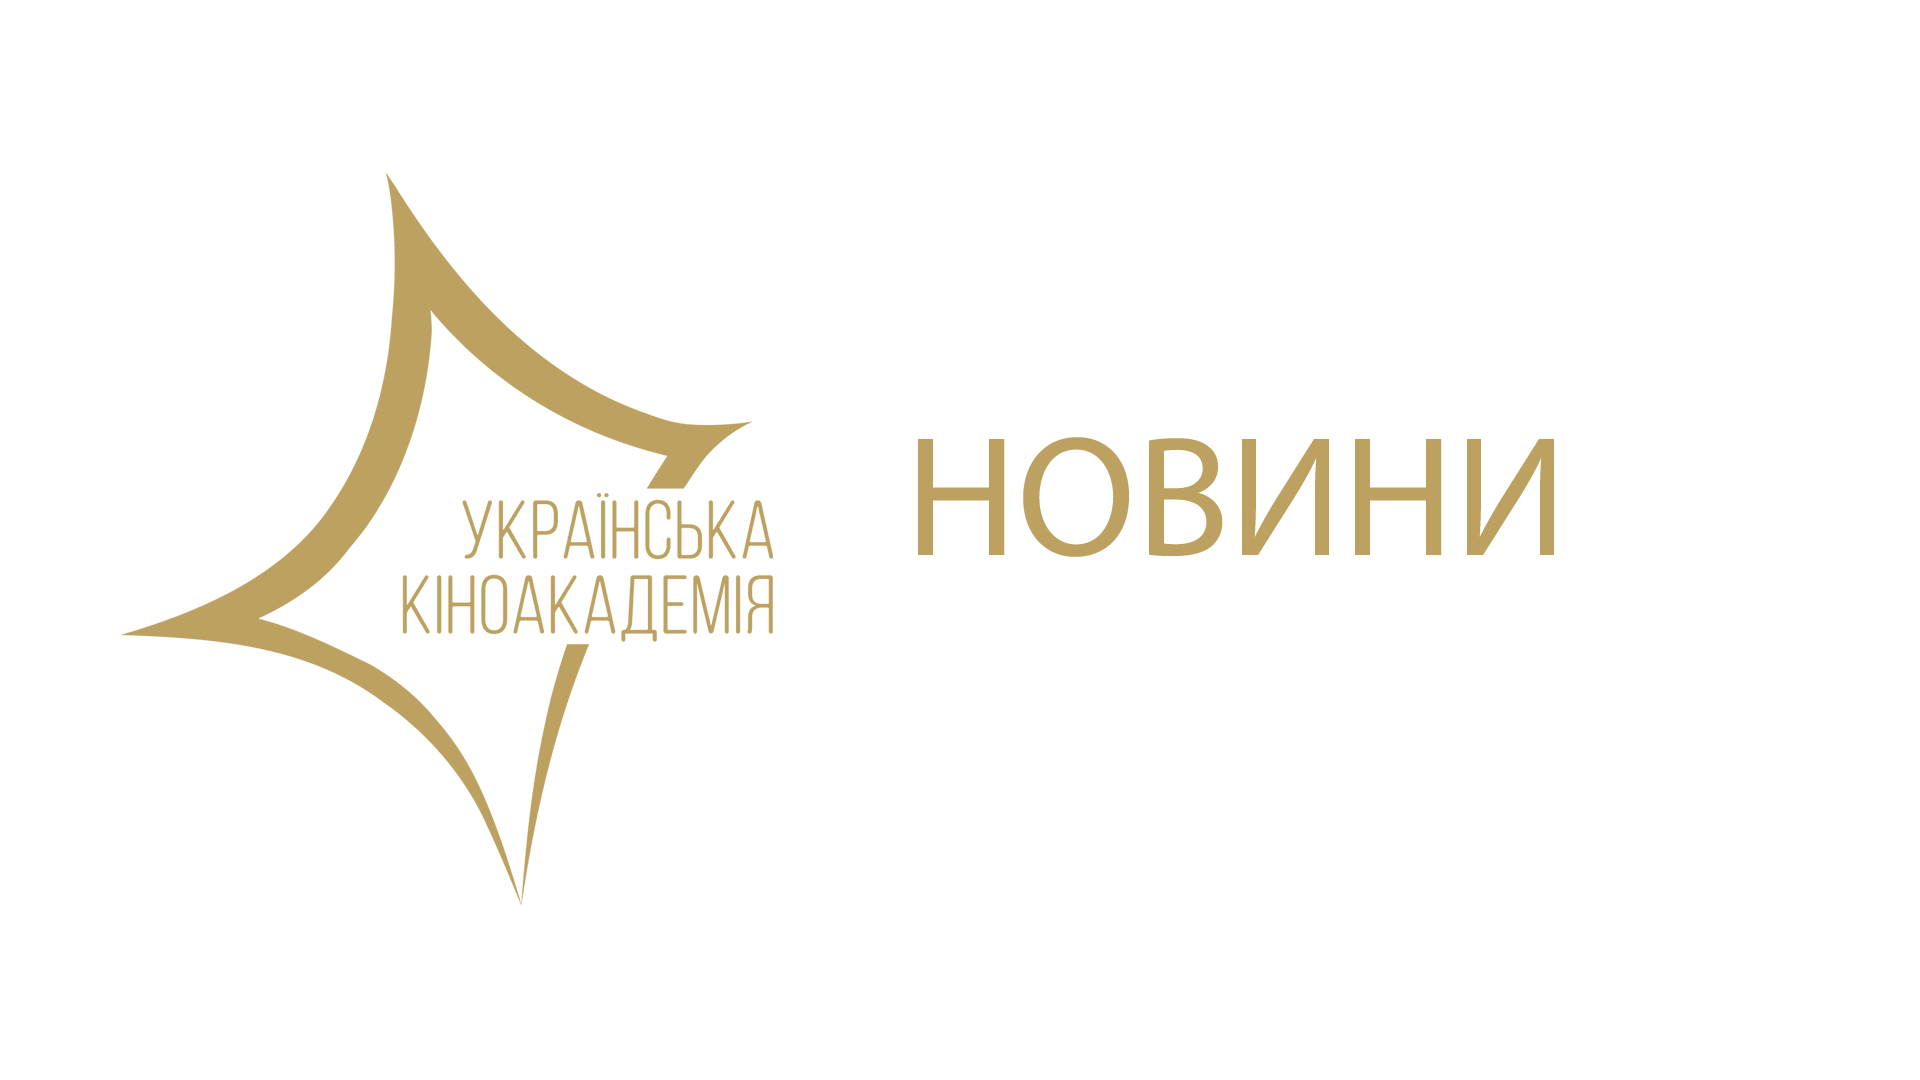 Українська кіноспільнота просить Прем'єр-міністра Володимира Гройсмана посприяти приєднанню України до Європейського фонду «Єврімаж»